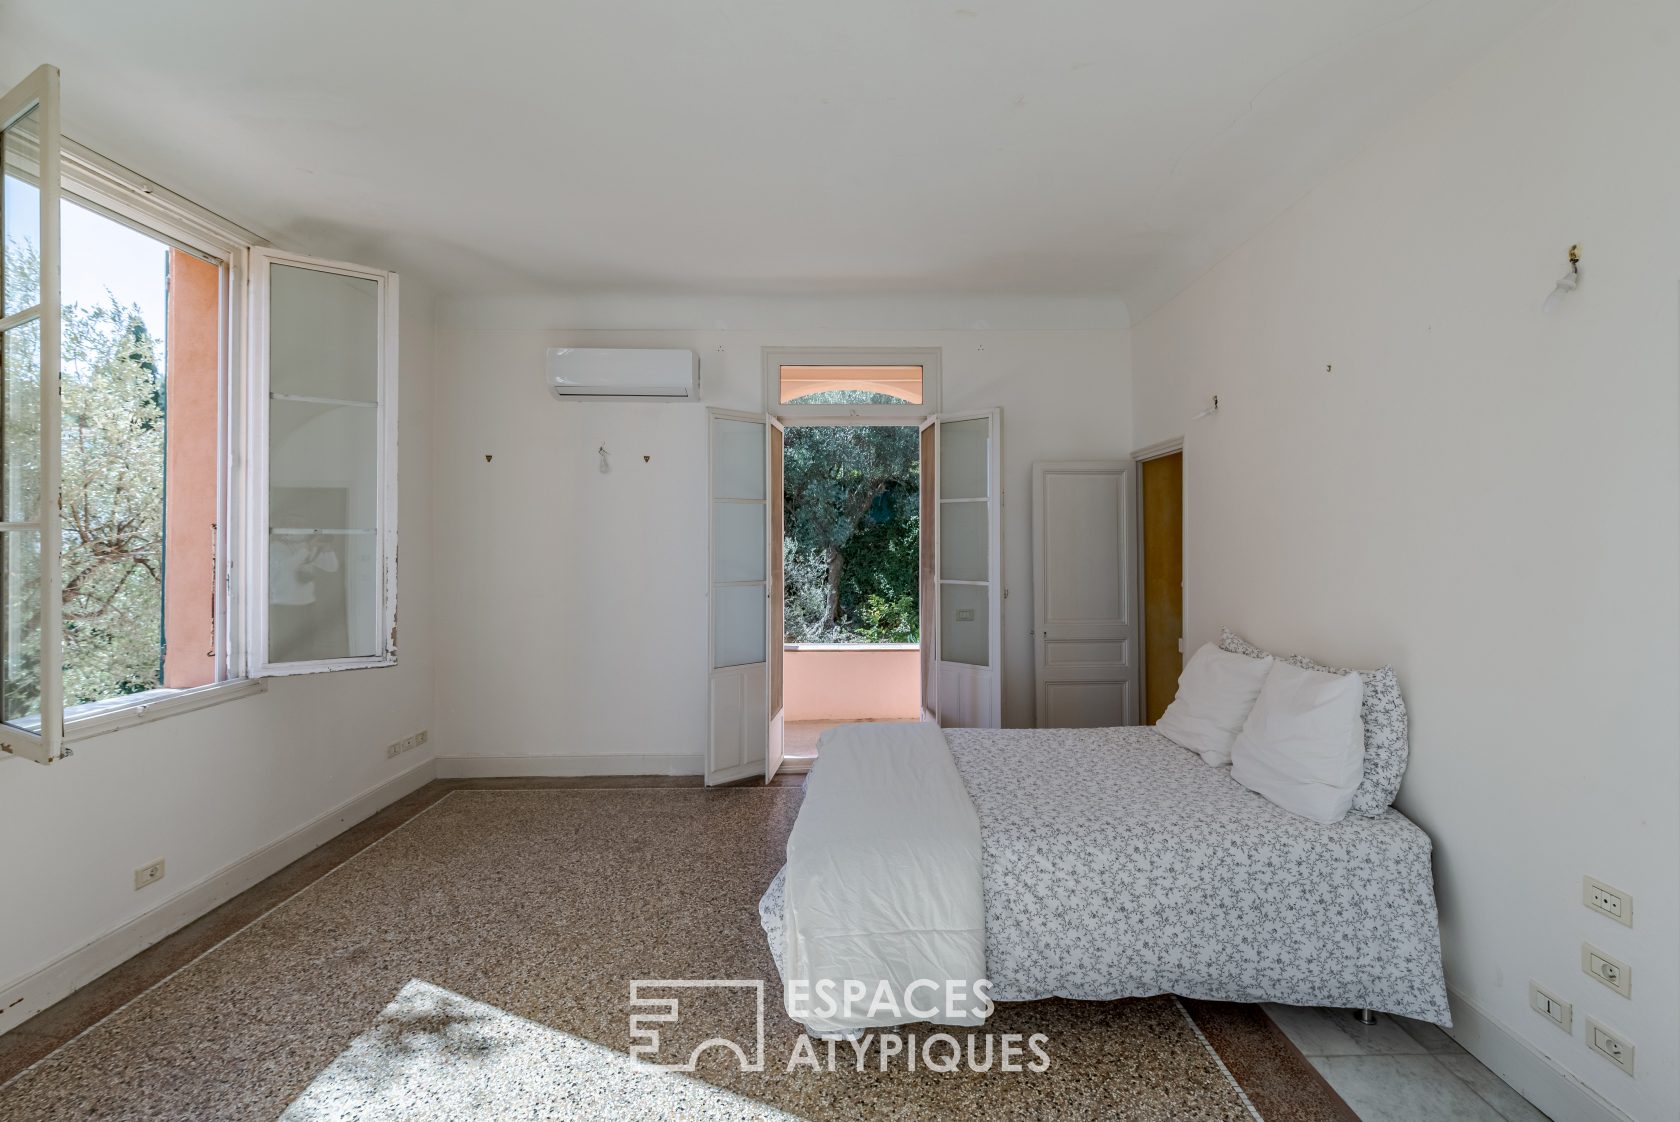 30’s Côte d’Azur villa with view